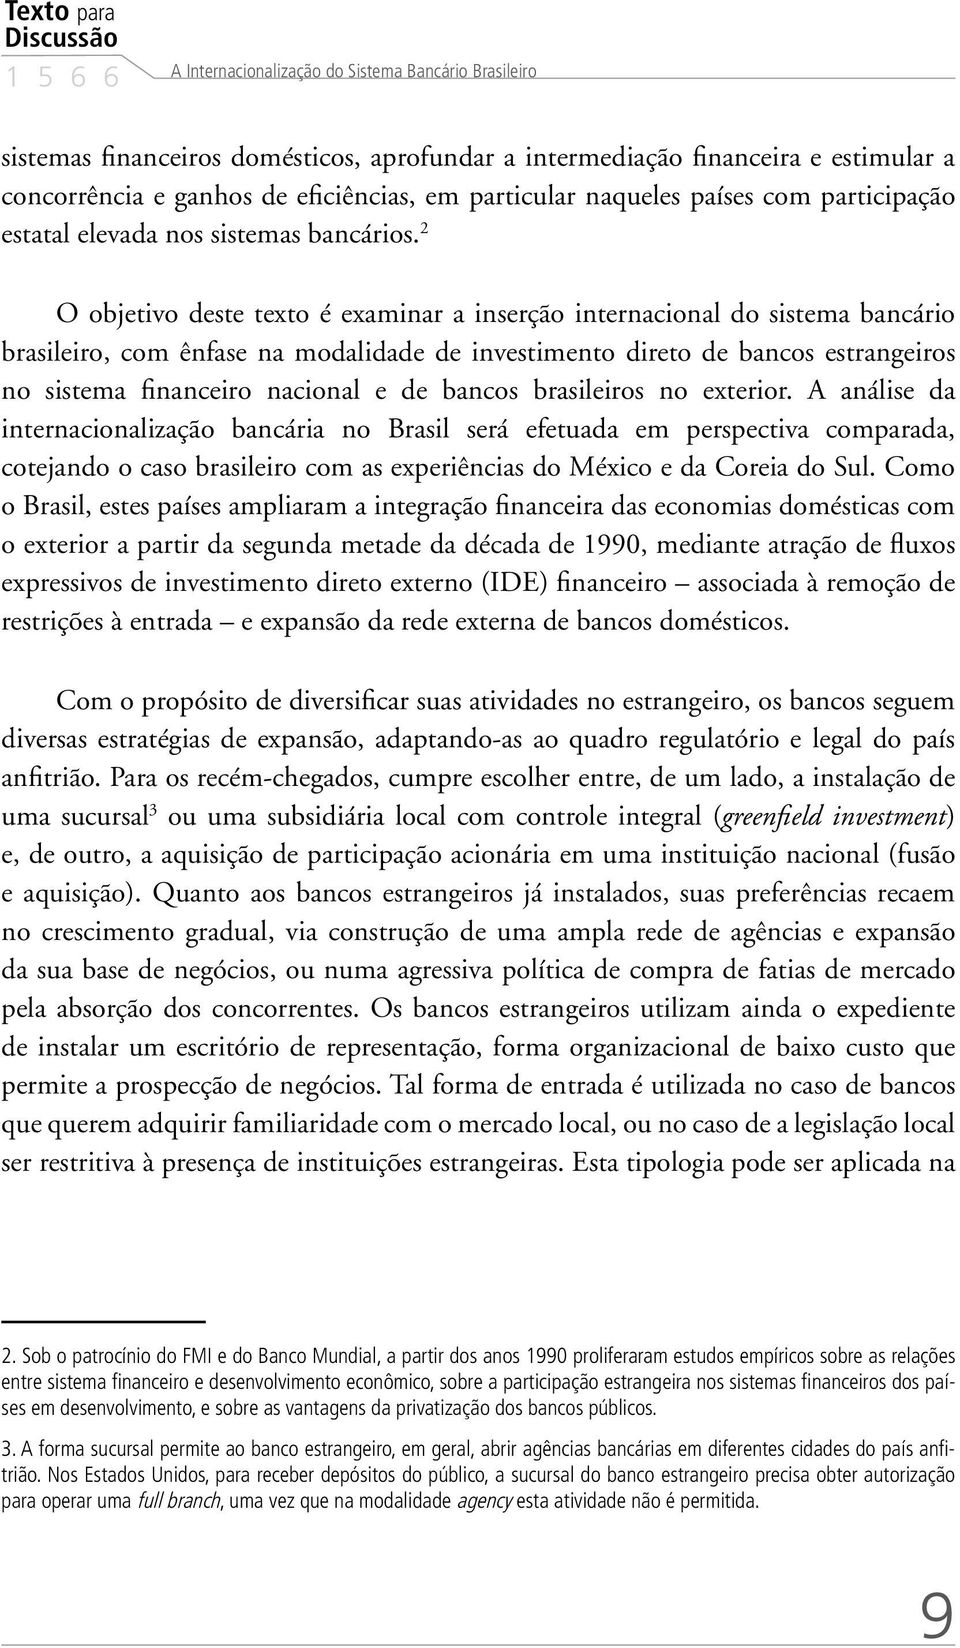 2 O objetivo deste texto é examinar a inserção internacional do sistema bancário brasileiro, com ênfase na modalidade de investimento direto de bancos estrangeiros no sistema financeiro nacional e de